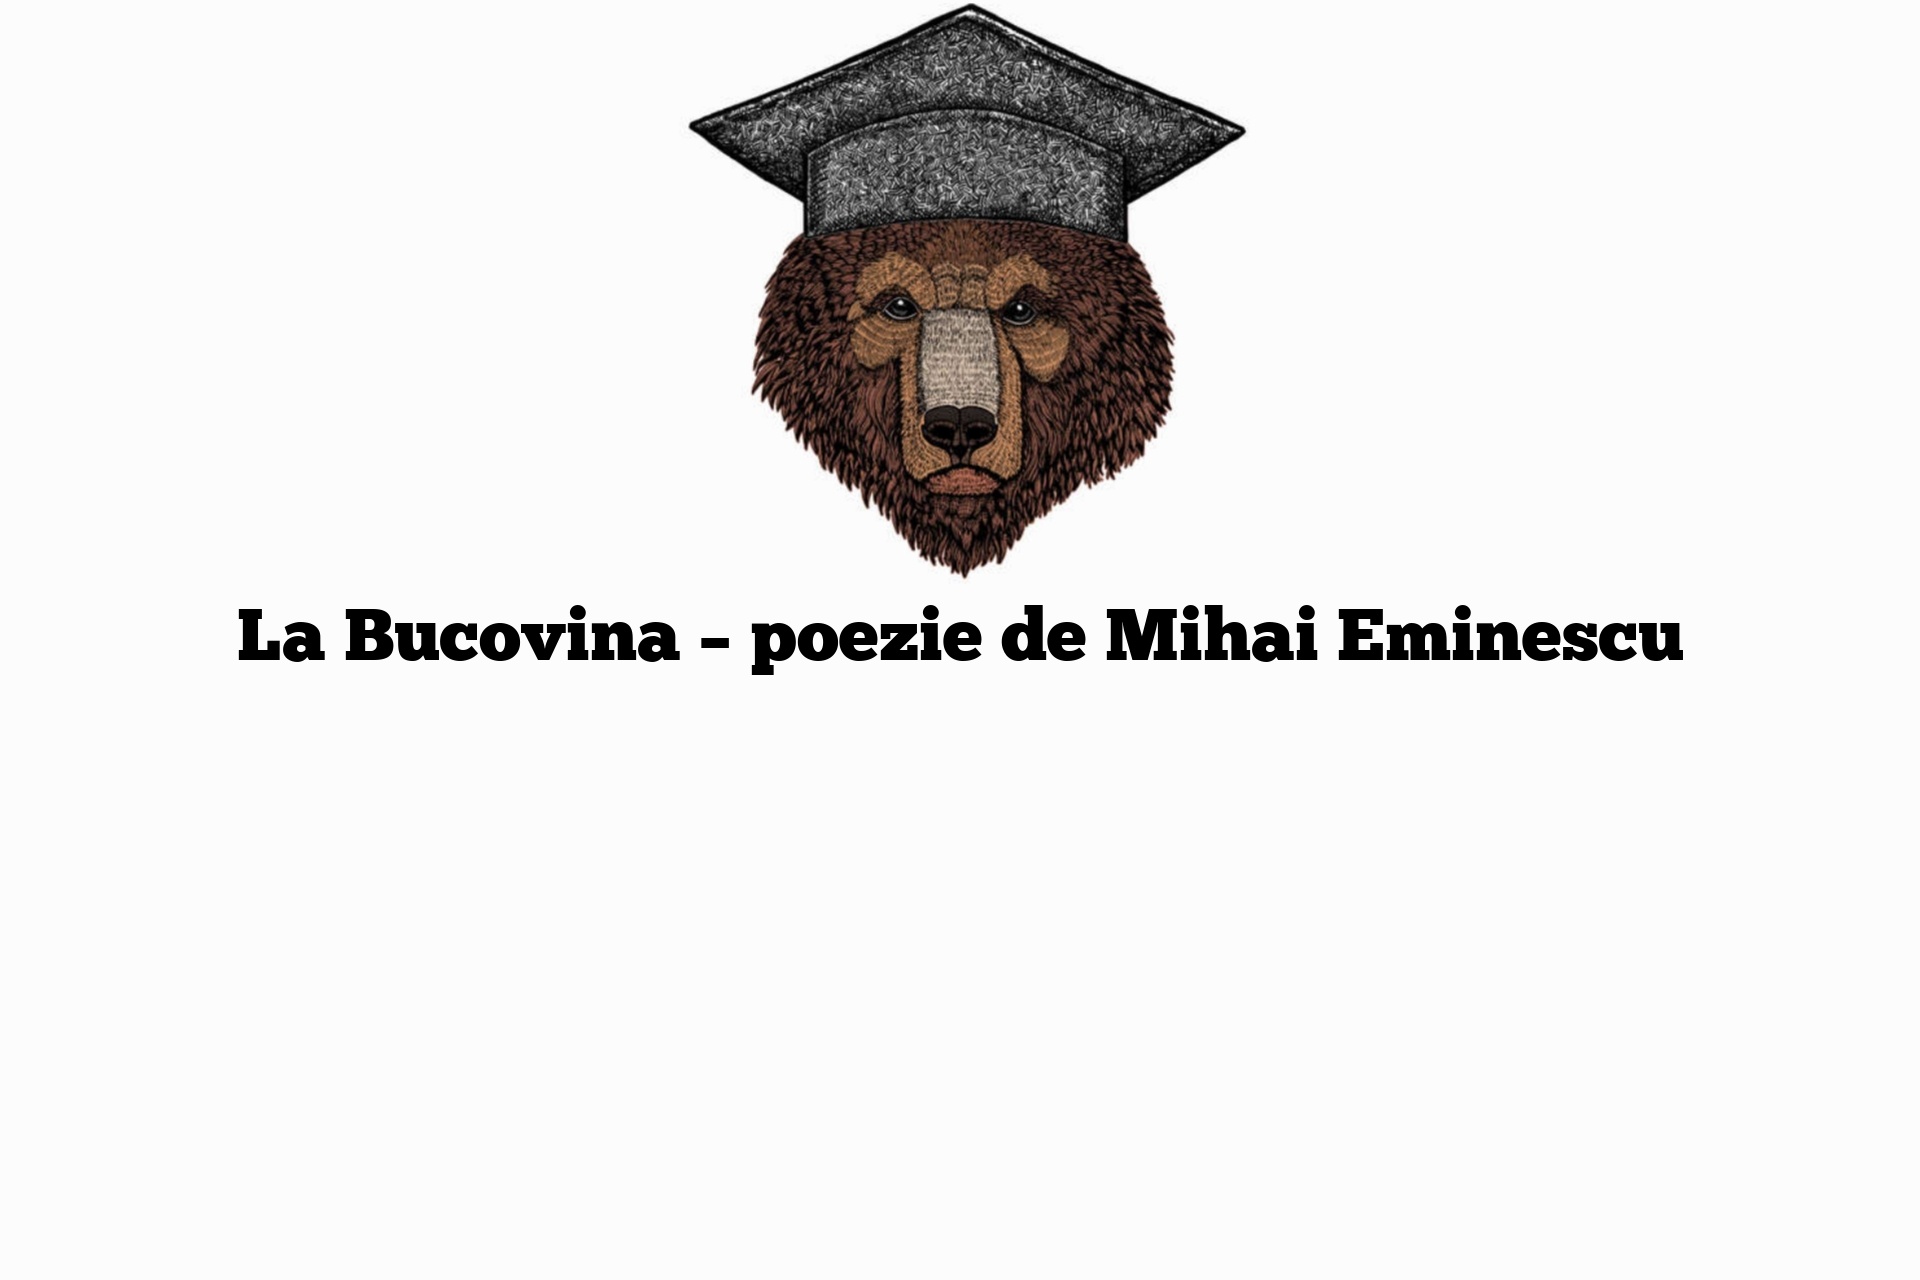 La Bucovina – poezie de Mihai Eminescu